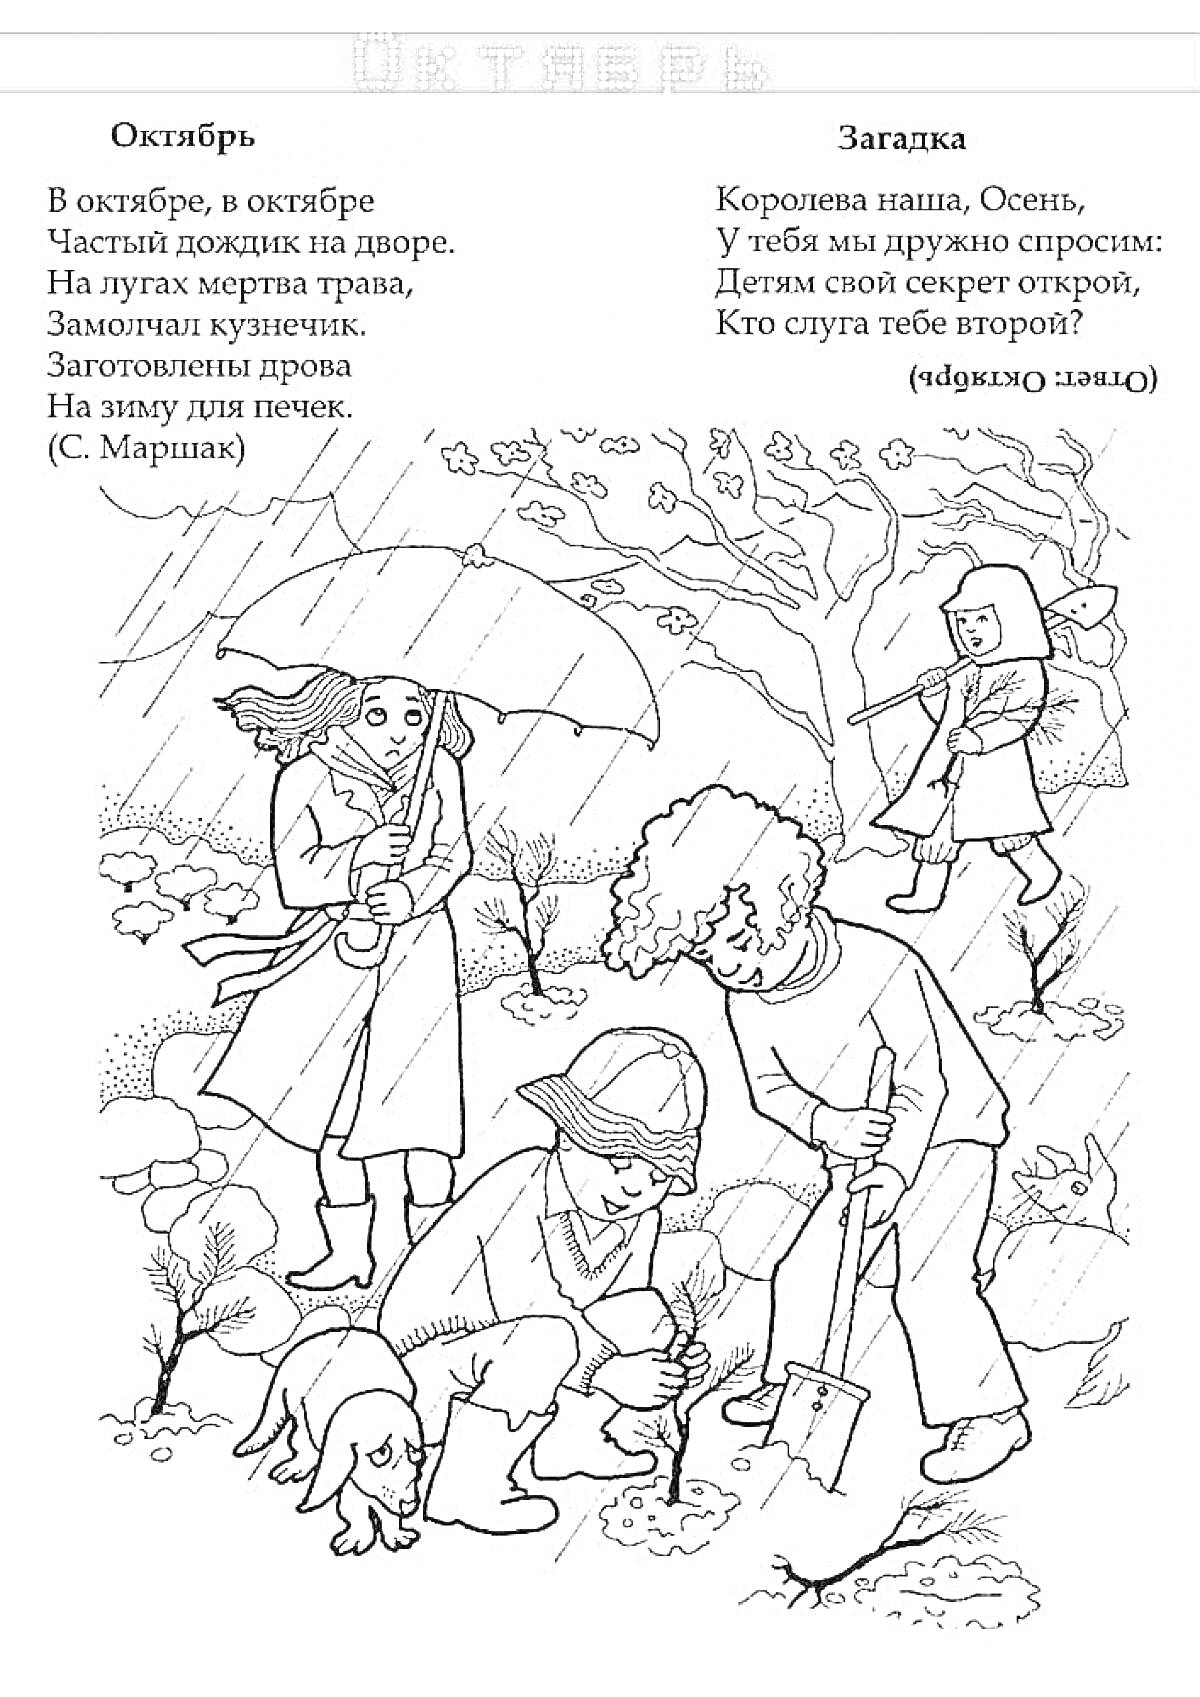 Люди и животные в осеннем парке под дождем: мальчик с зонтом, женщина с зонтом, работающий мужчина с лопатой, собака, деревья, кусты, падающие листья, загадка про осень